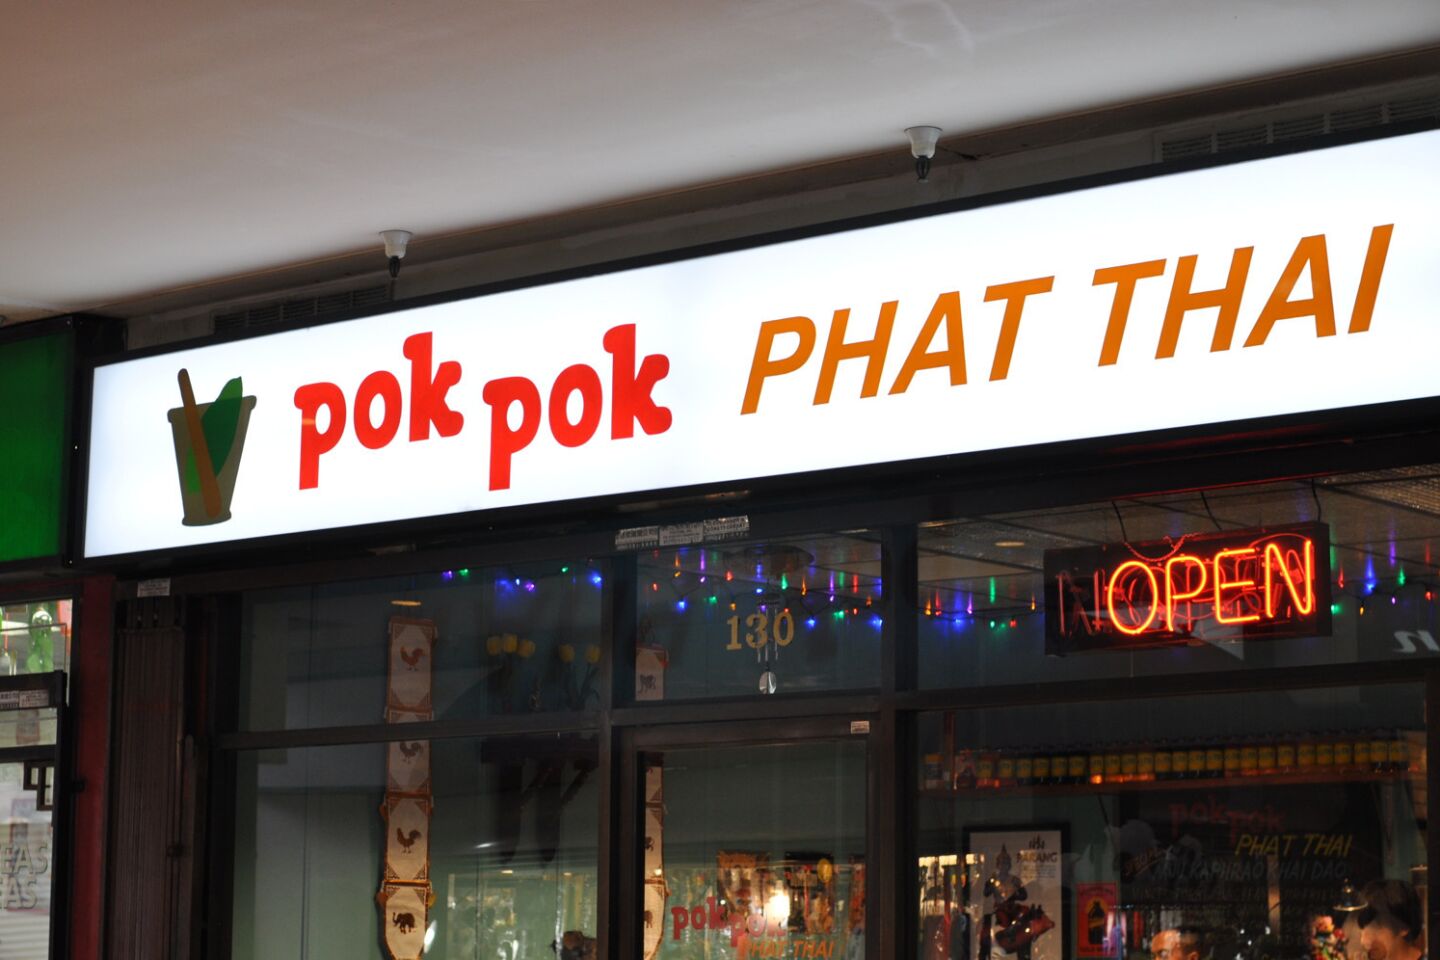 Pok Pok's sign